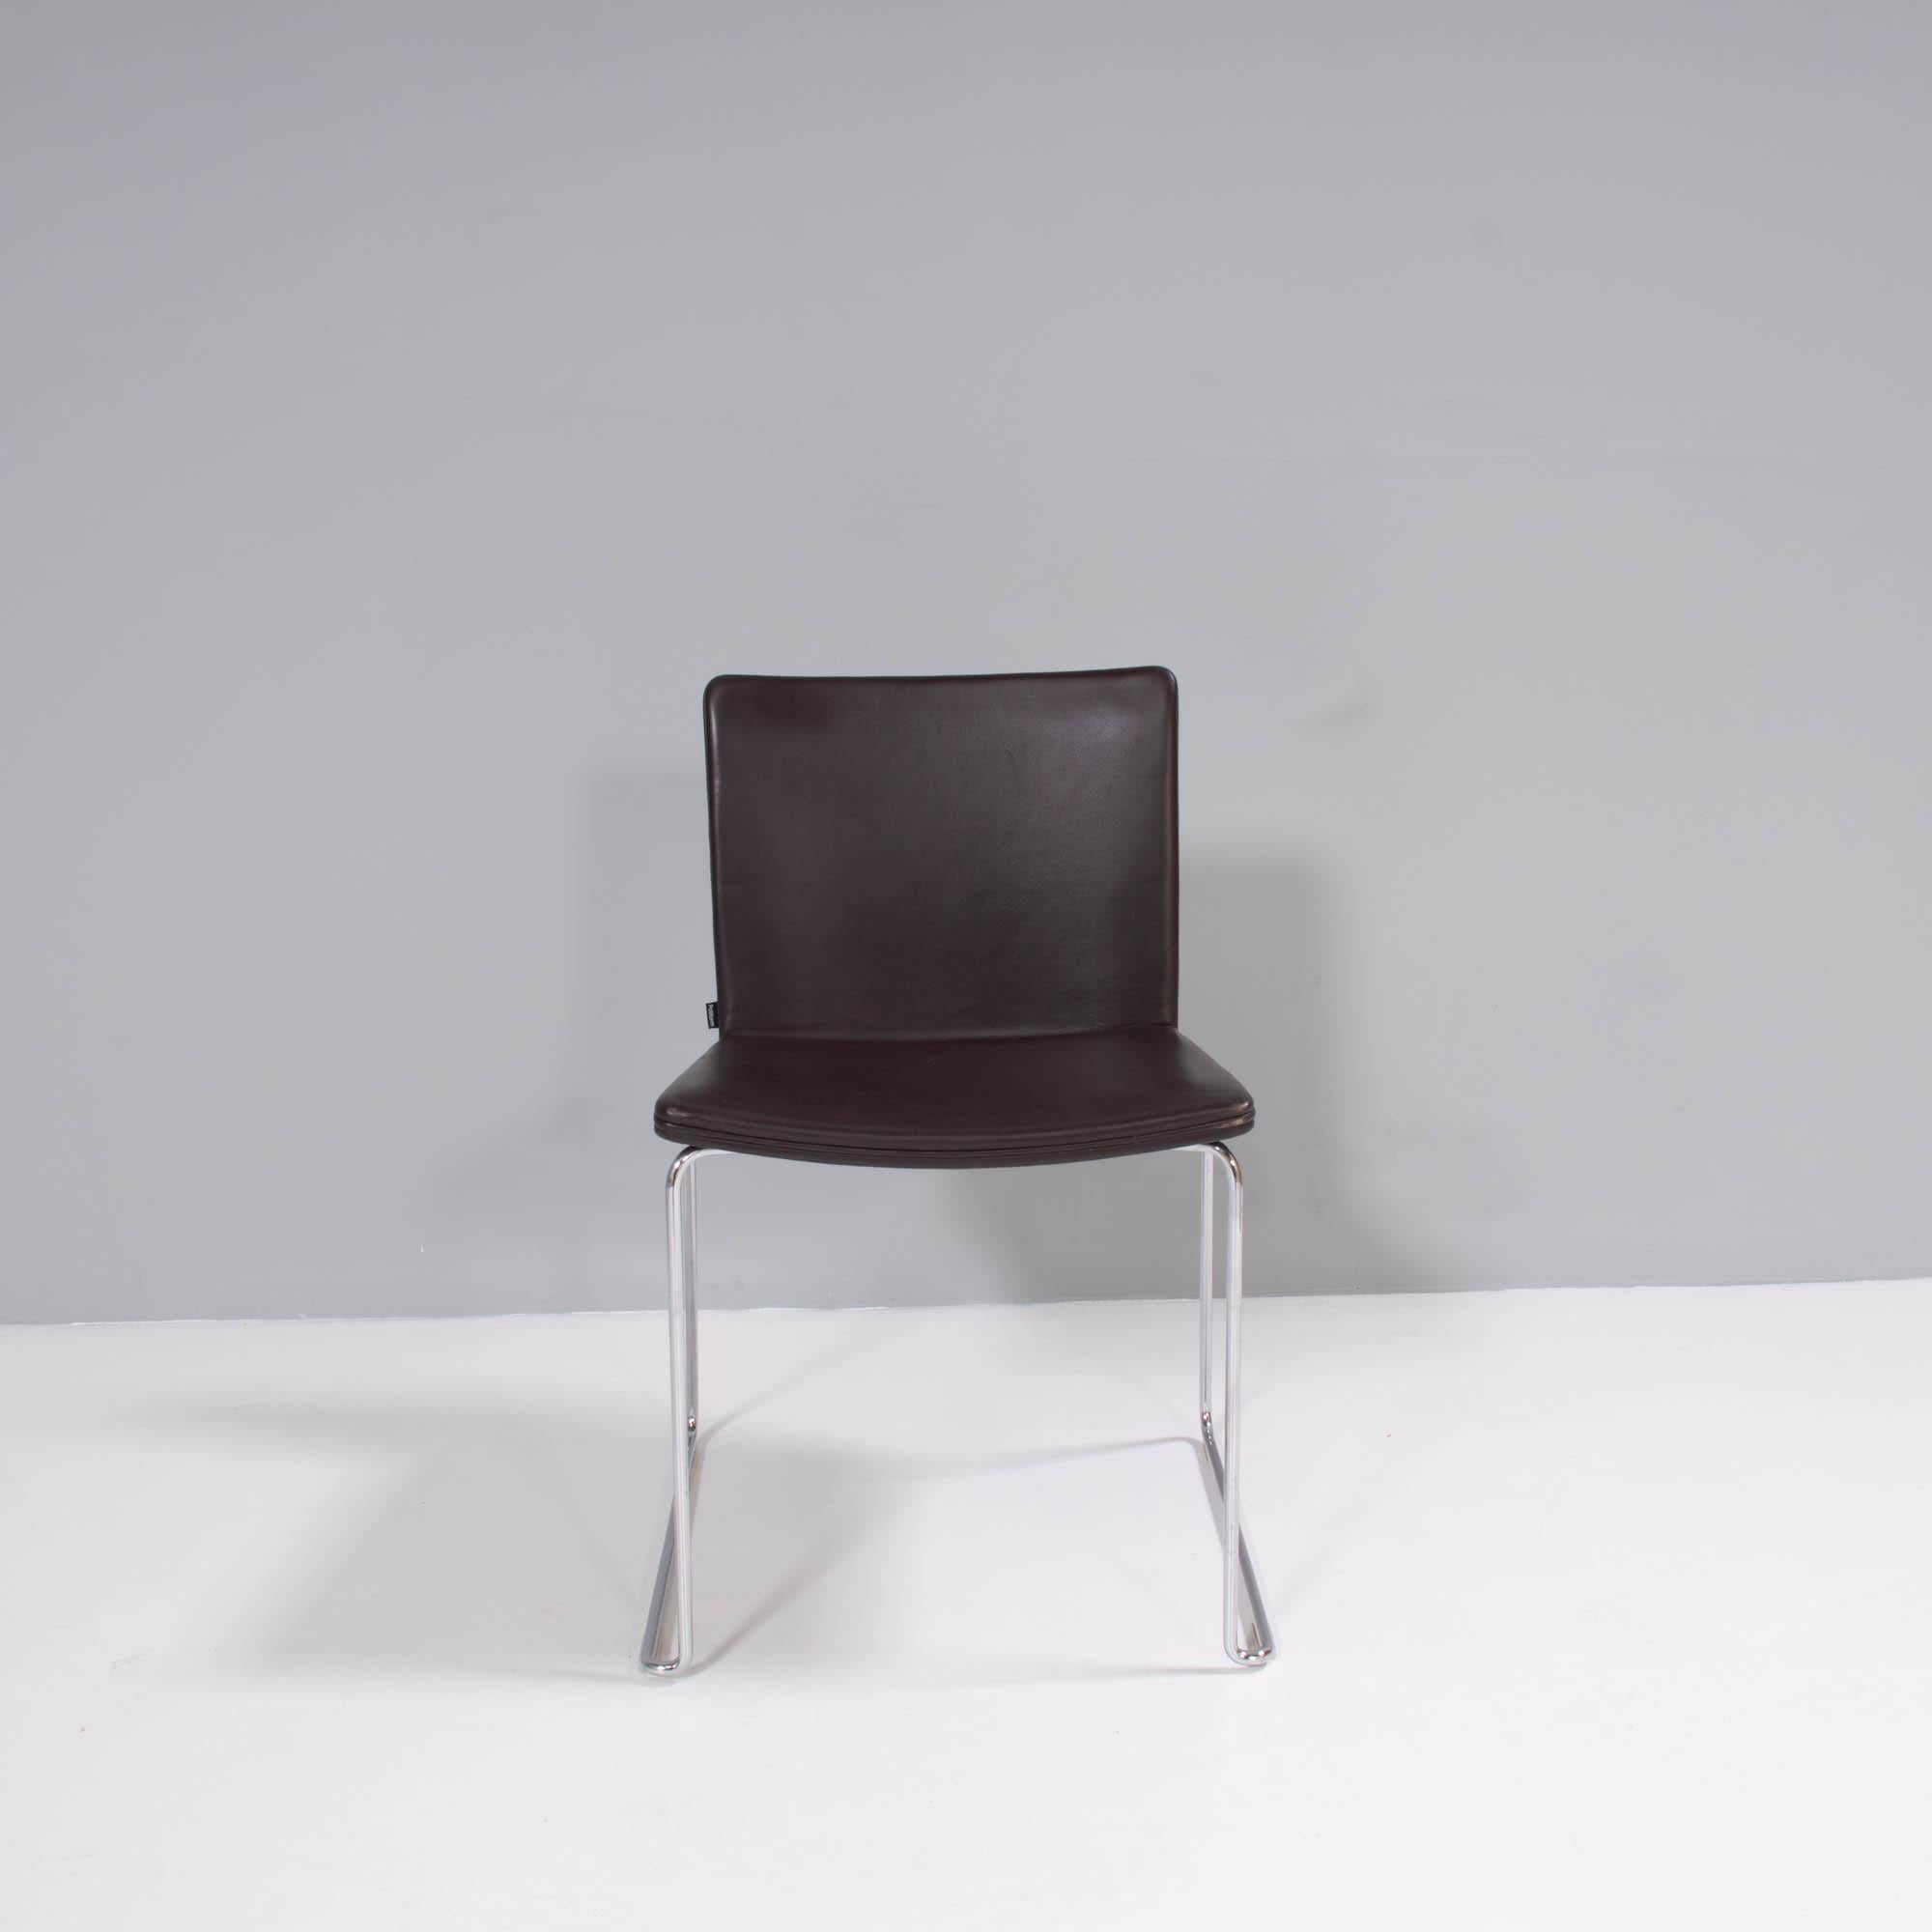 Conçue à l'origine par Mario Mazzer pour Poliform en 2003, la chaise de salle à manger Nex est la quintessence du design épuré et moderne.

Doté d'une structure en métal chromé avec base en traîneau, le siège est moulé pour le confort et tapissé